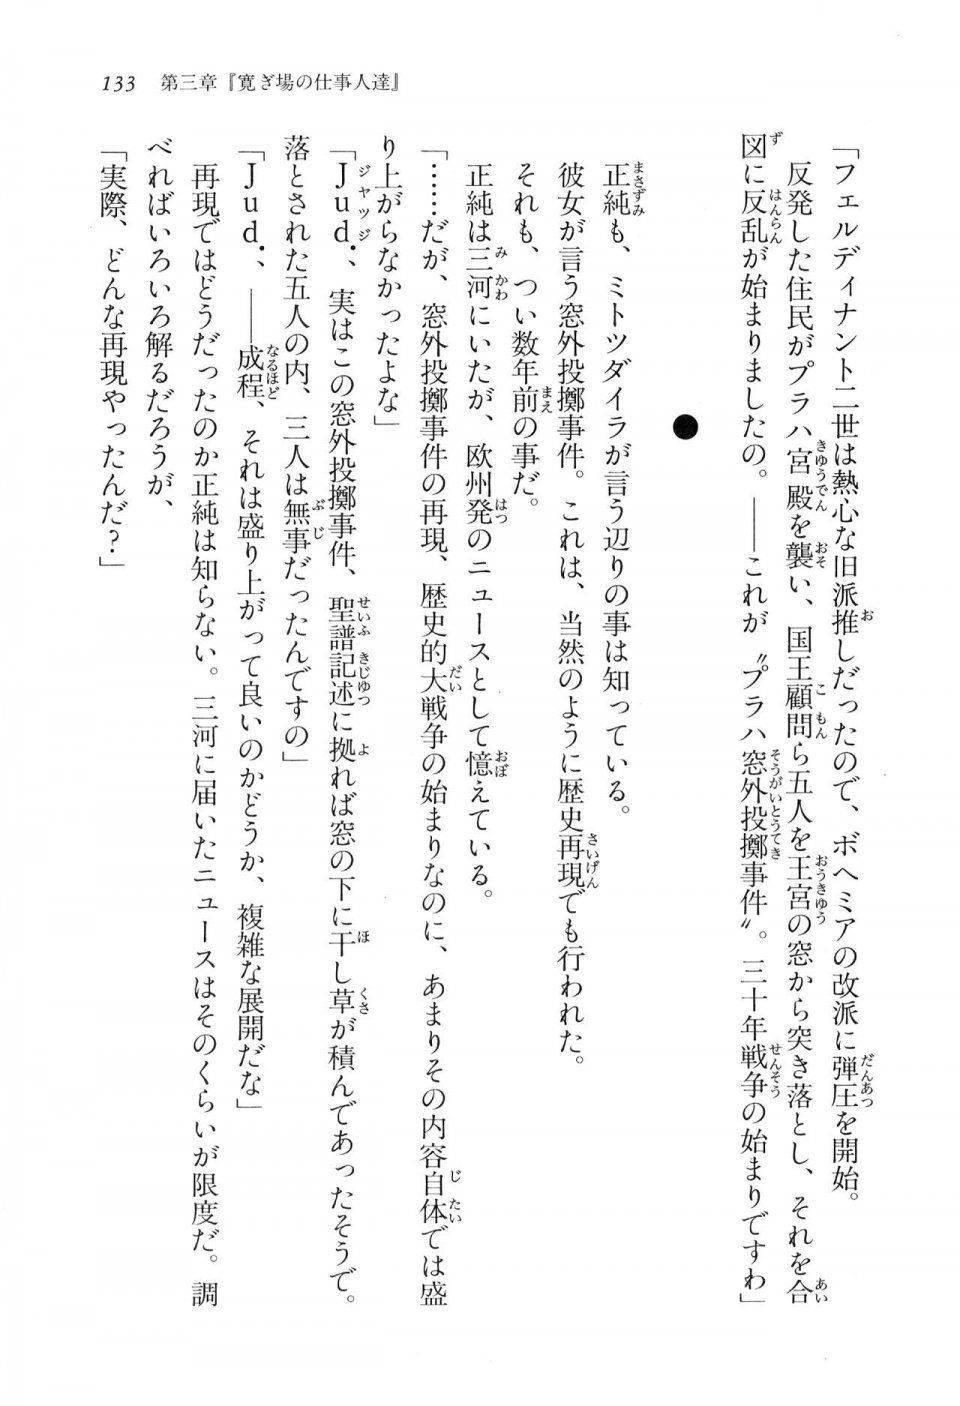 Kyoukai Senjou no Horizon LN Vol 16(7A) - Photo #133